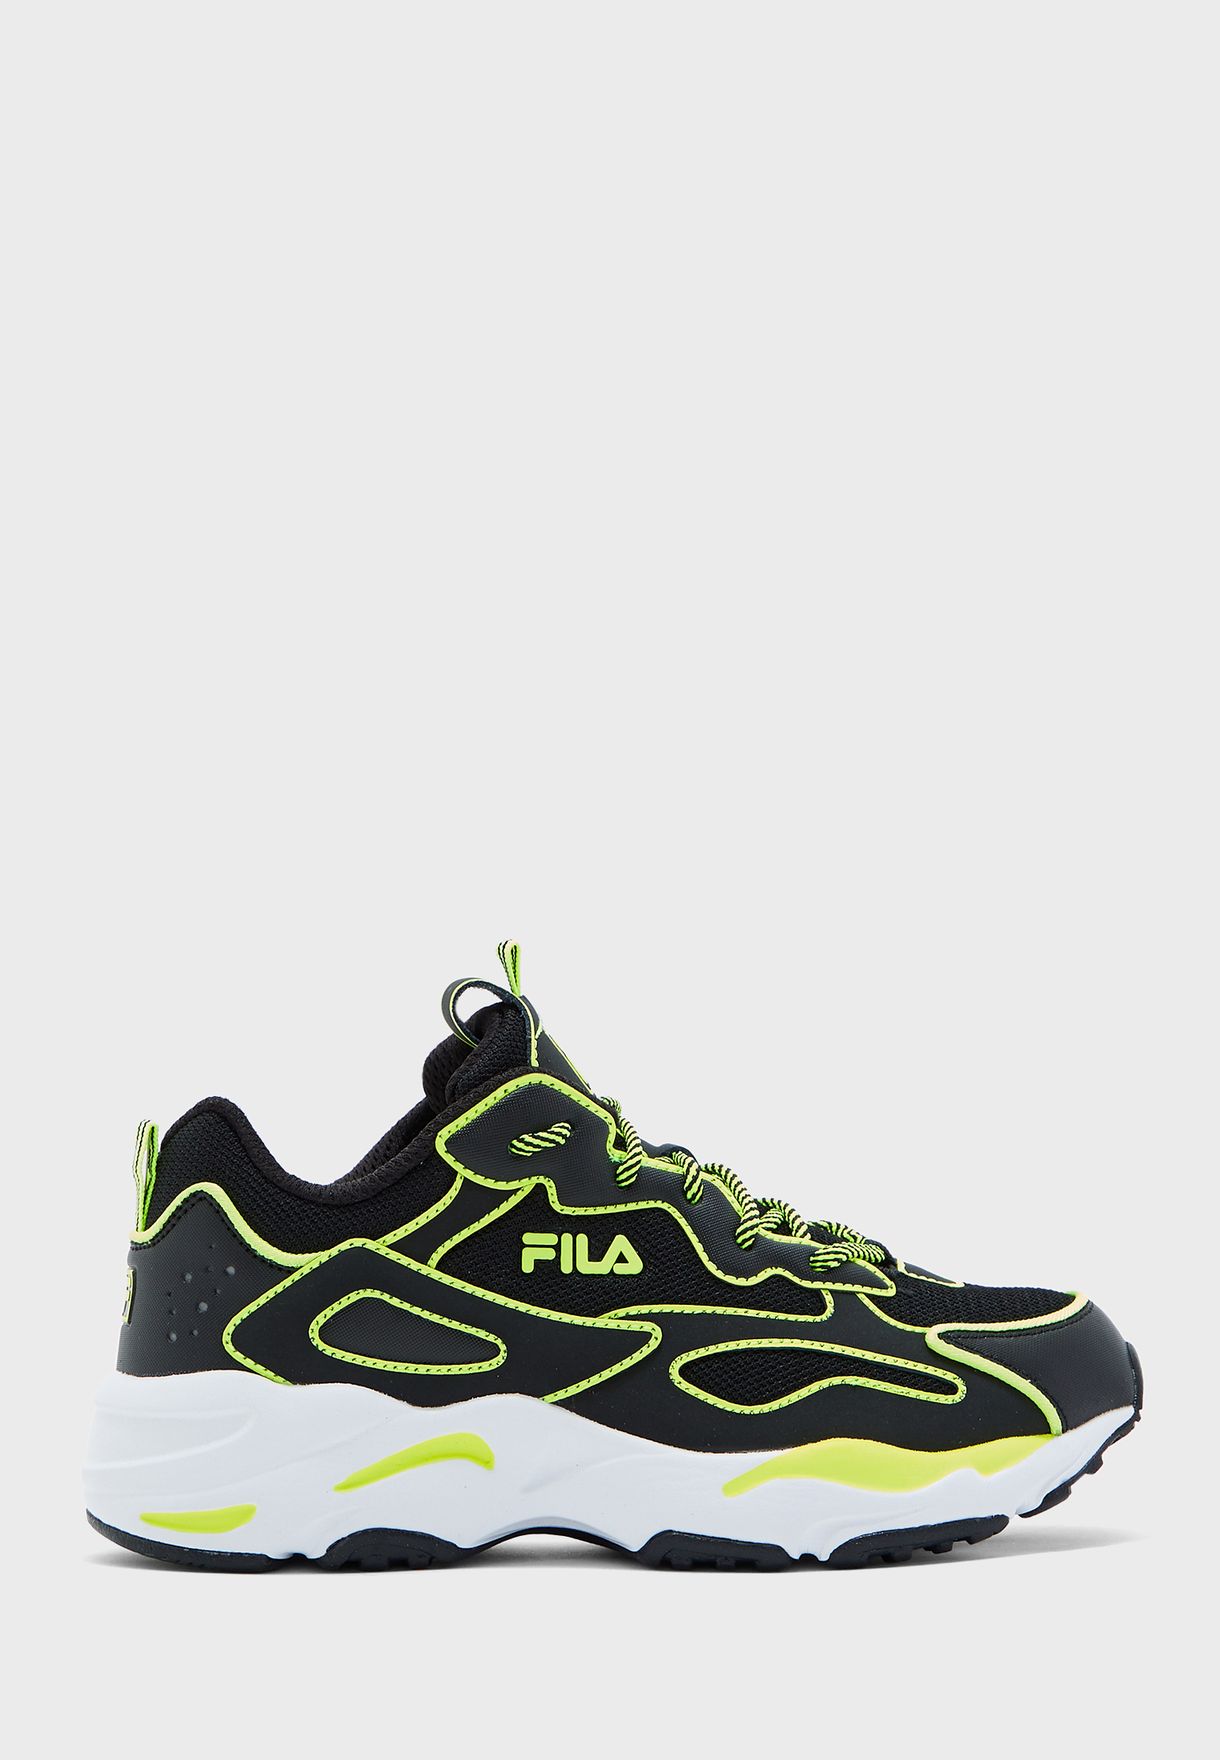 neon green fila shoes